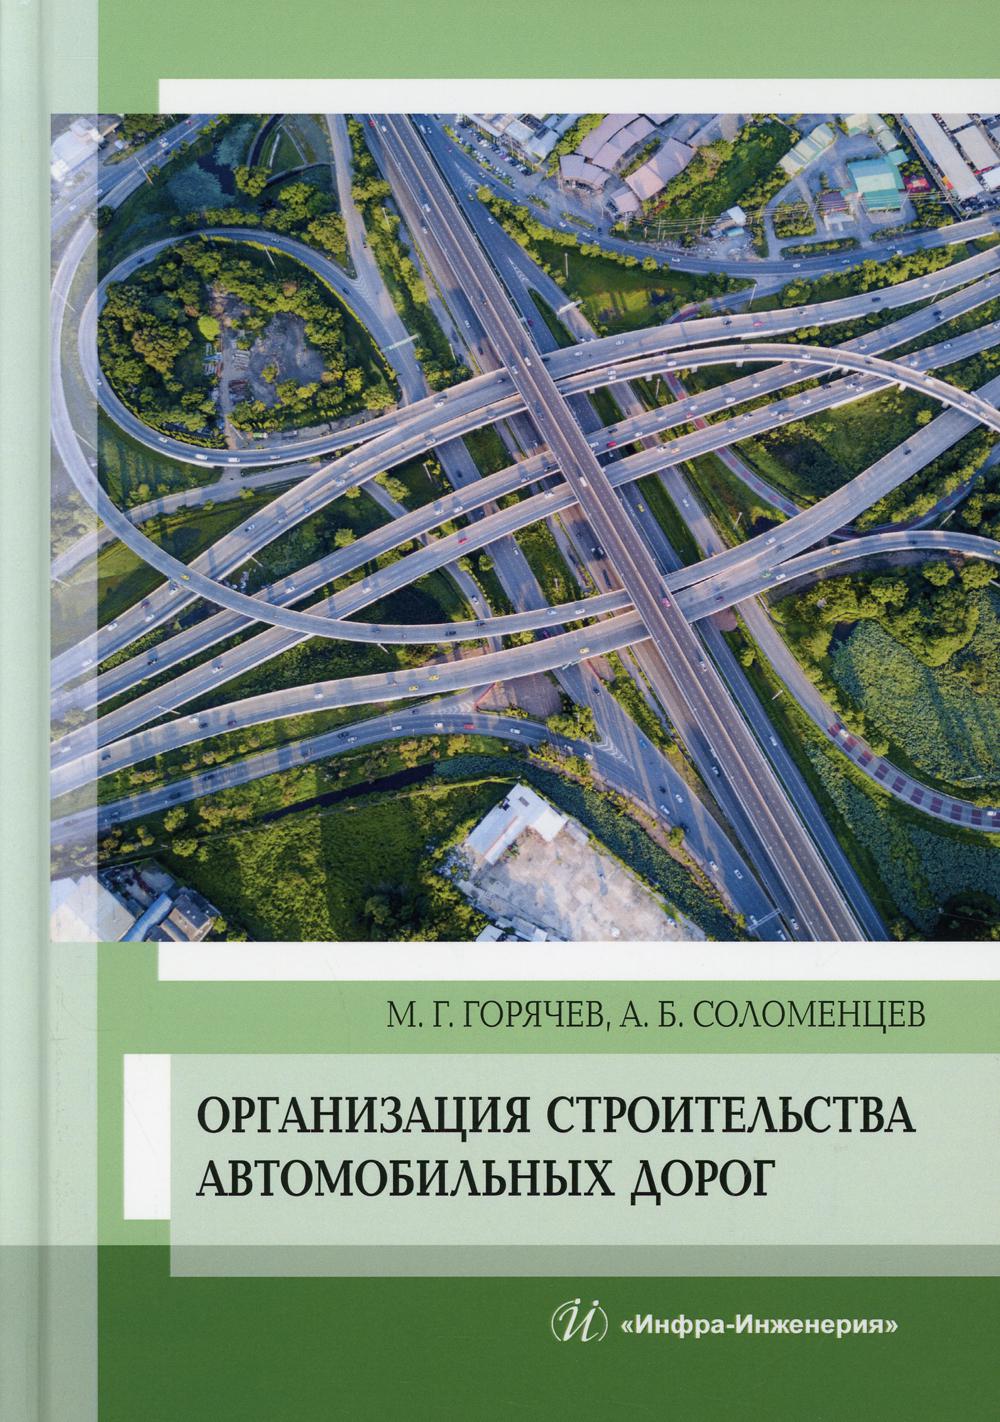 фото Книга организация строительства автомобильных дорог инфра-инженерия